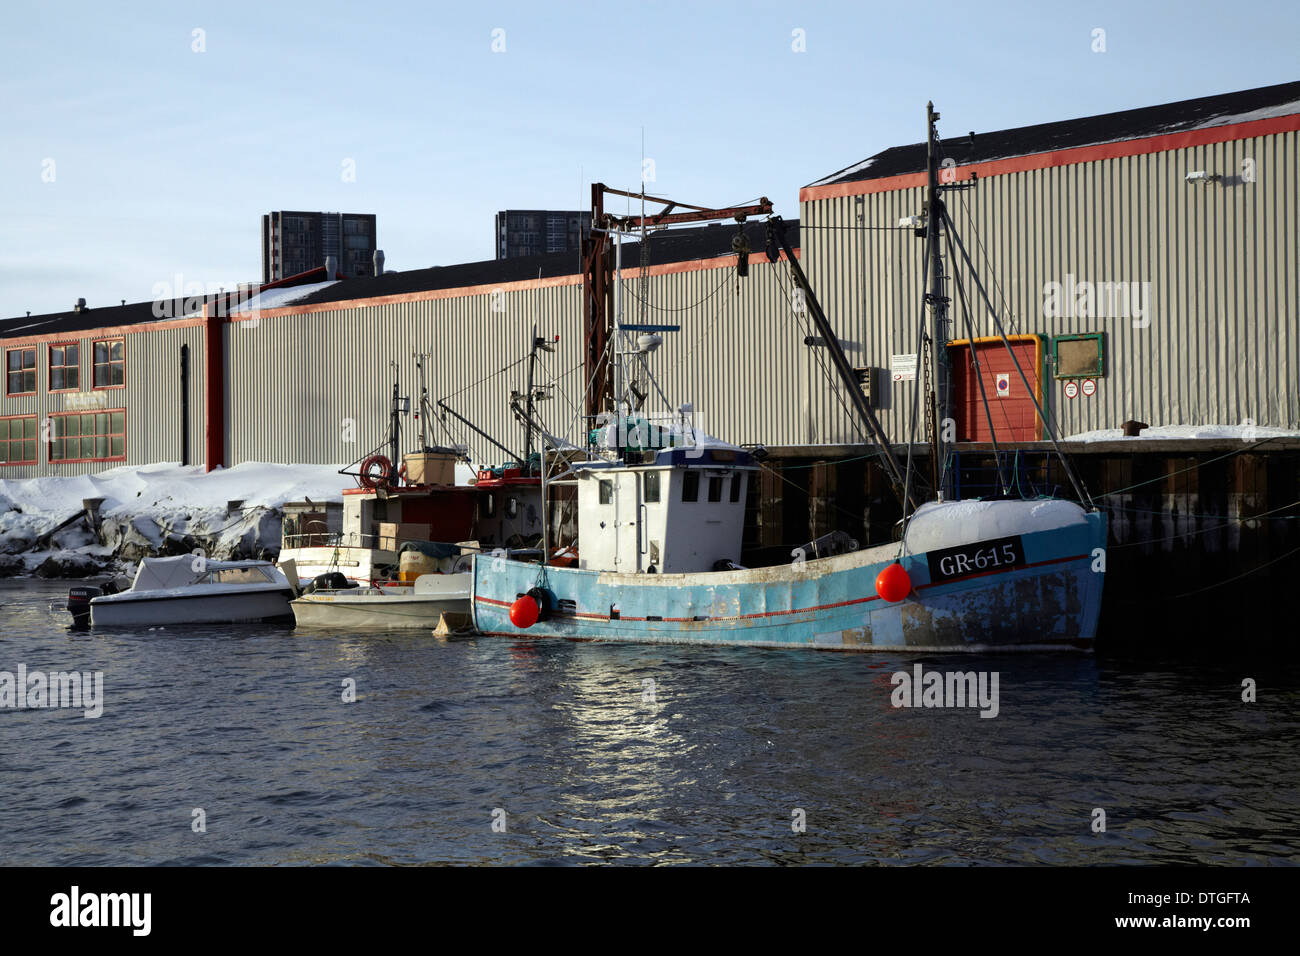 Bateaux de pêche au port de la ville de Nuuk, Groenland Banque D'Images